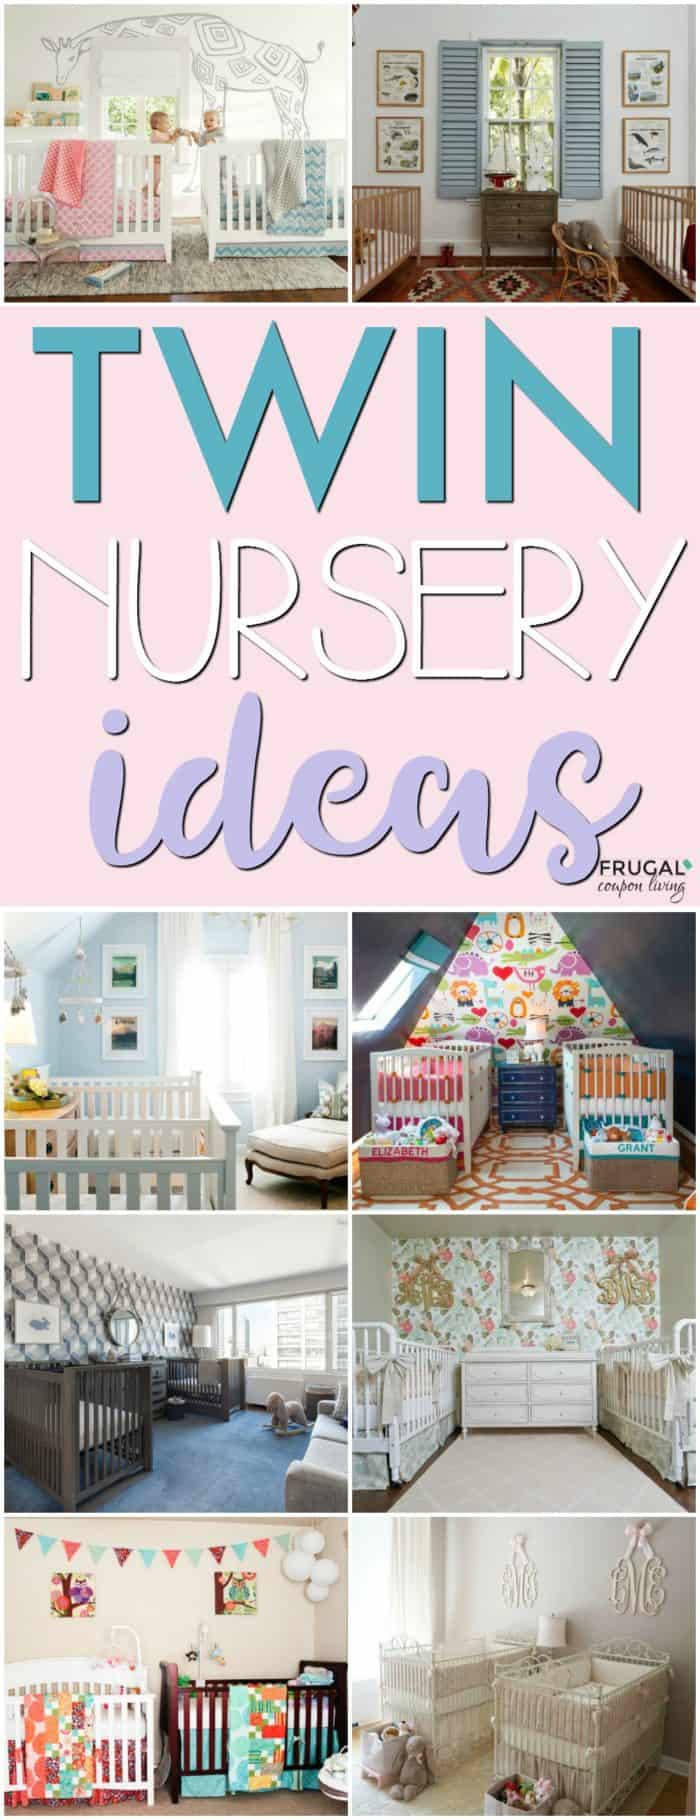 Nursery Ideas